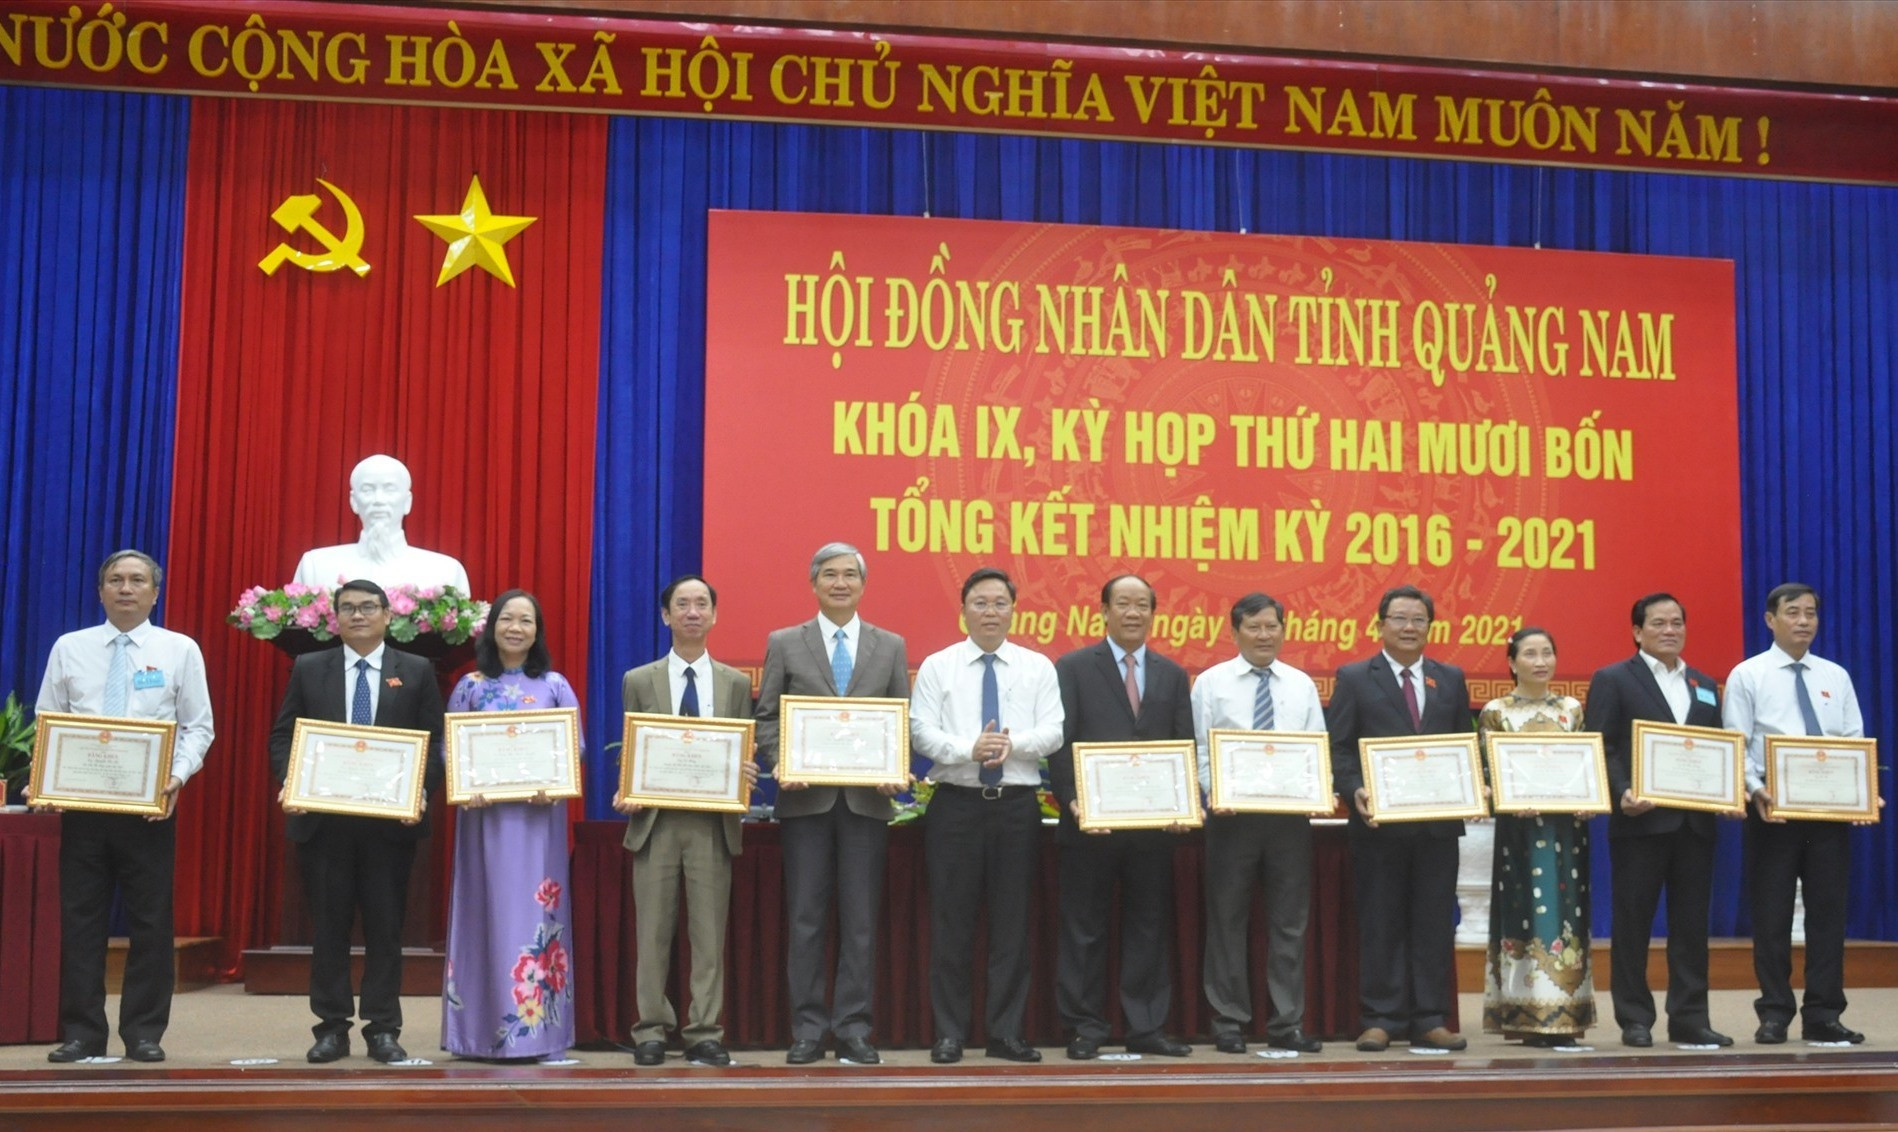 Chủ tịch UBND tỉnh Lê Trí Thanh tặng Bằng khen các đại biểu HĐND tỉnh khóa IX có thành xuất sắc đóng góp vào sự phát triển chung của tỉnh nhiệm kỳ 2016-2021. Ảnh: N.Đ